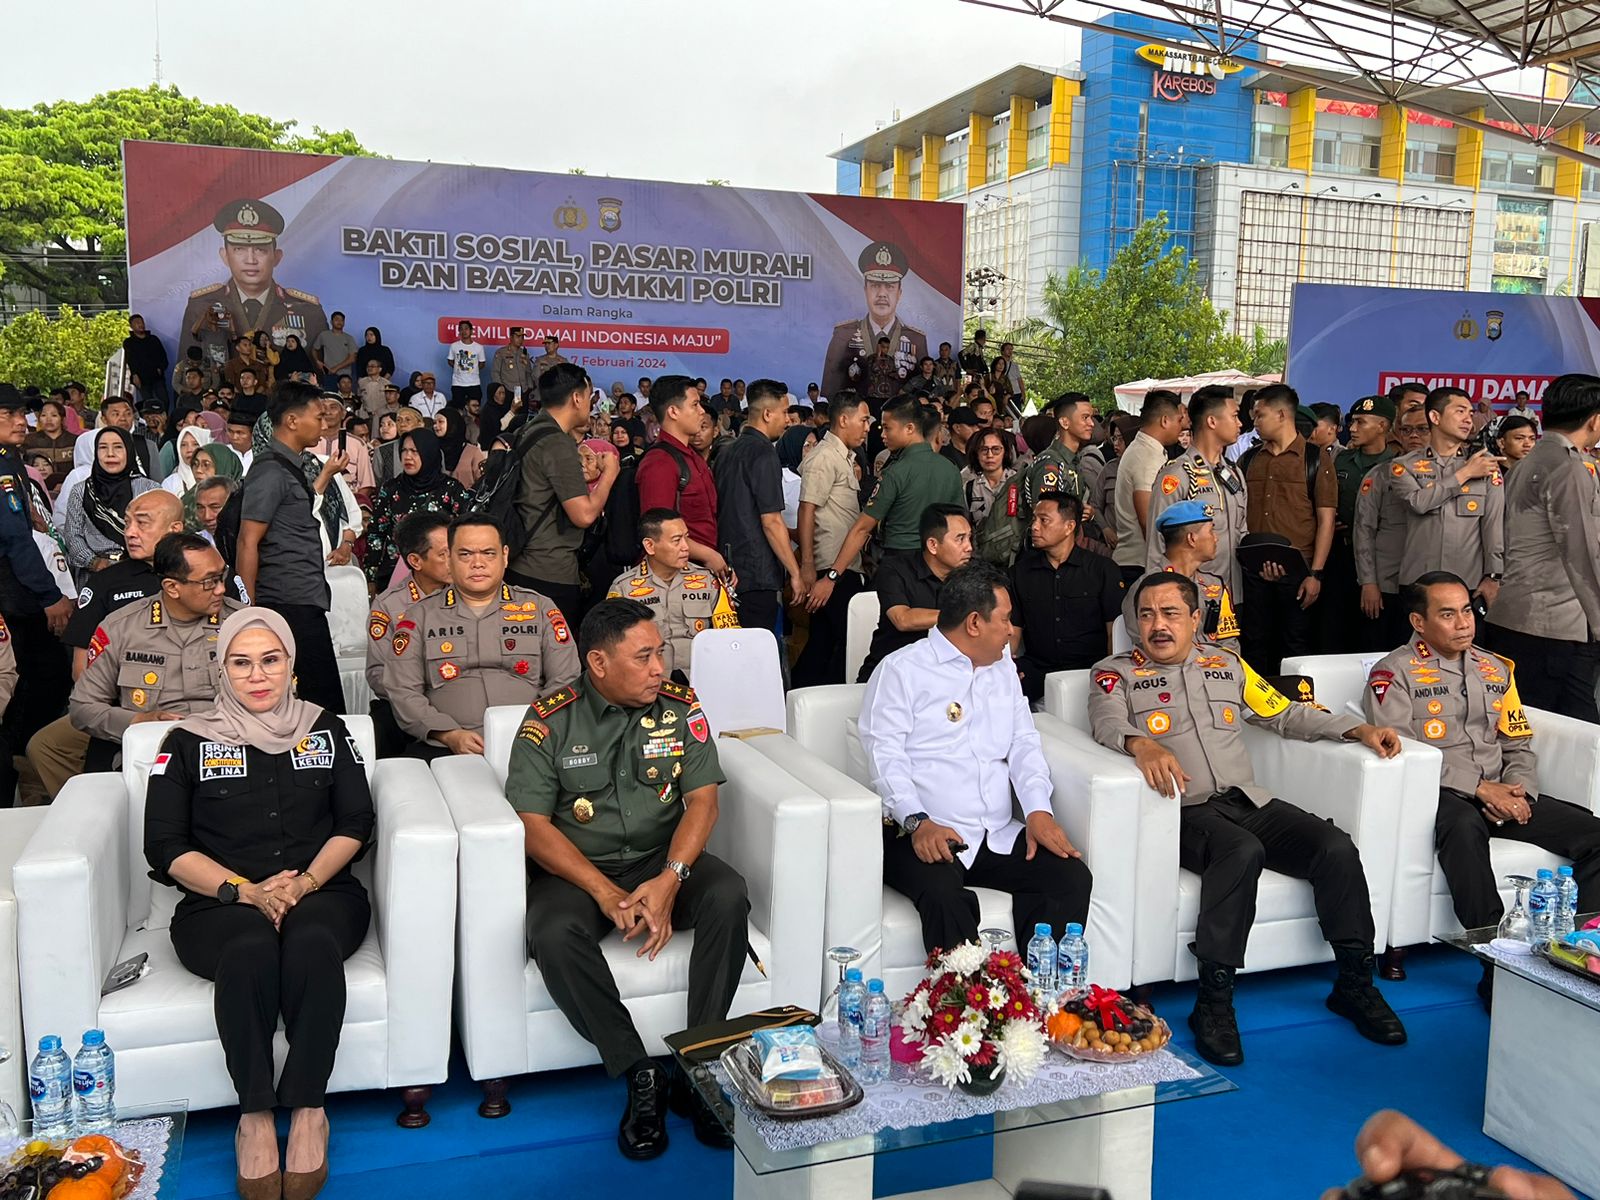 Dihadiri Wakapolri, Ketua DPRD Sulsel Hadiri Pasar Murah Dan Bazar UMKM Pemilu Damai Indonesia Maju